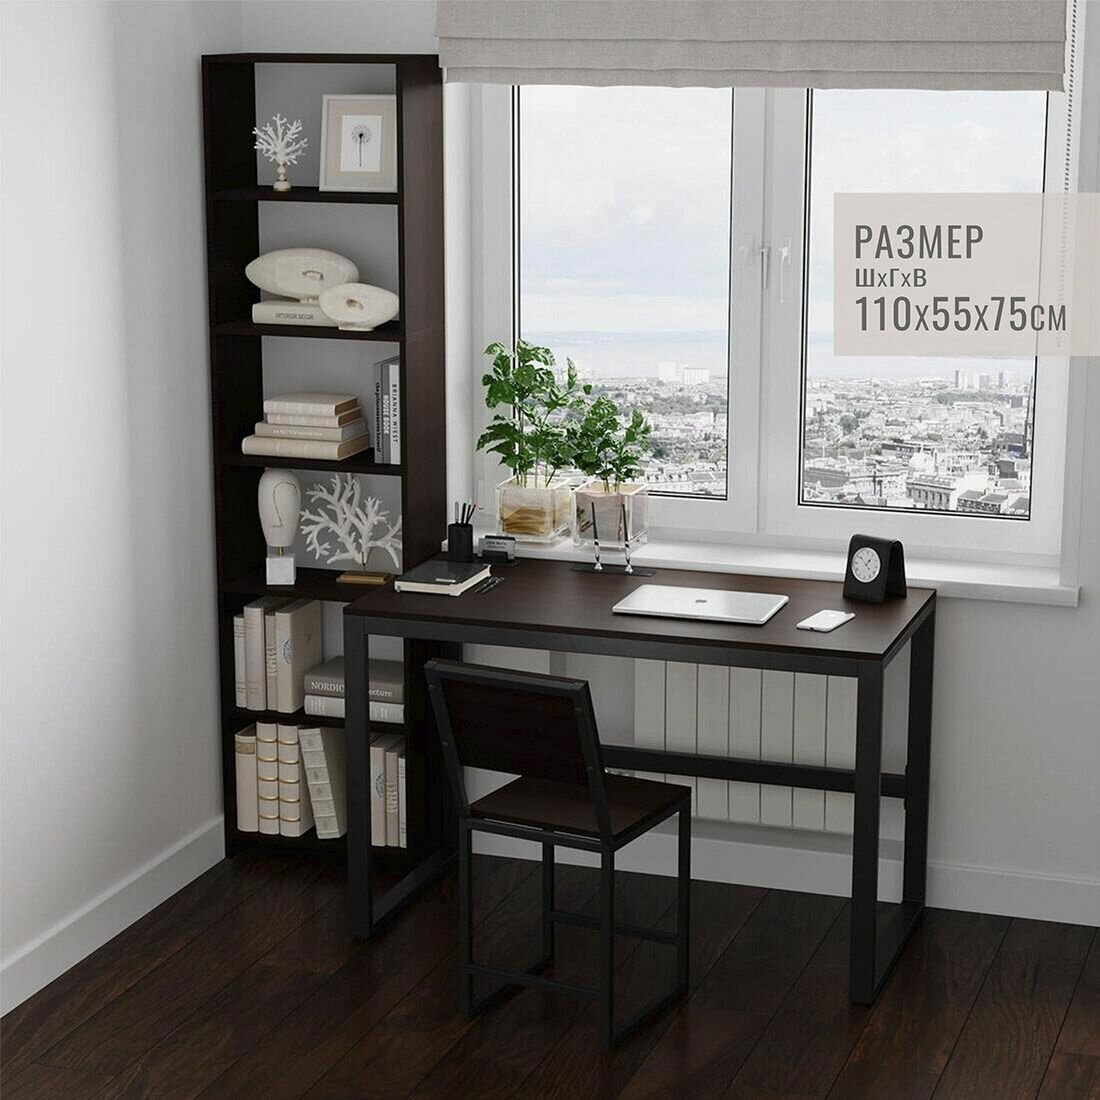 Стол письменный STANFORD loft, темно-коричневый, компьютерный, офисный, кухонный, обеденный, 110x55x75 см, гростат